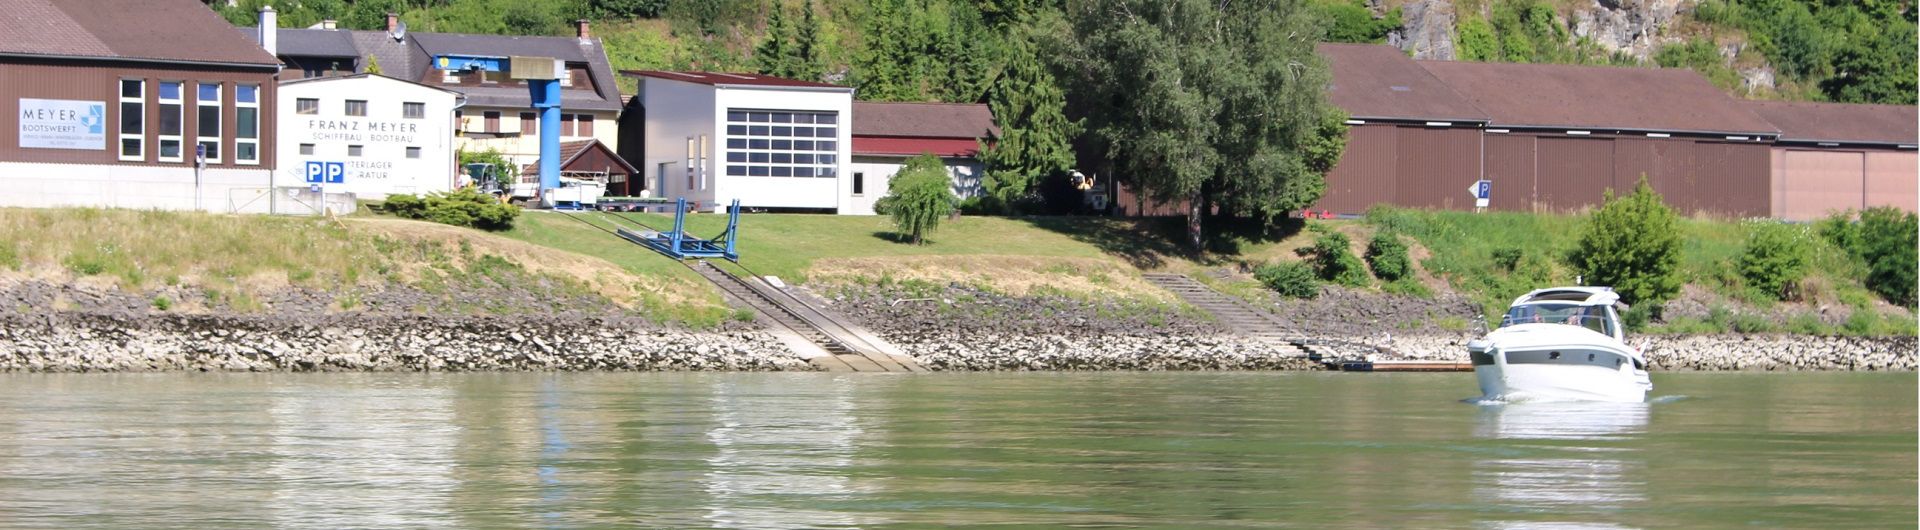 Reinigung und Bootsaufbereitung Betrieb Donauansicht Header